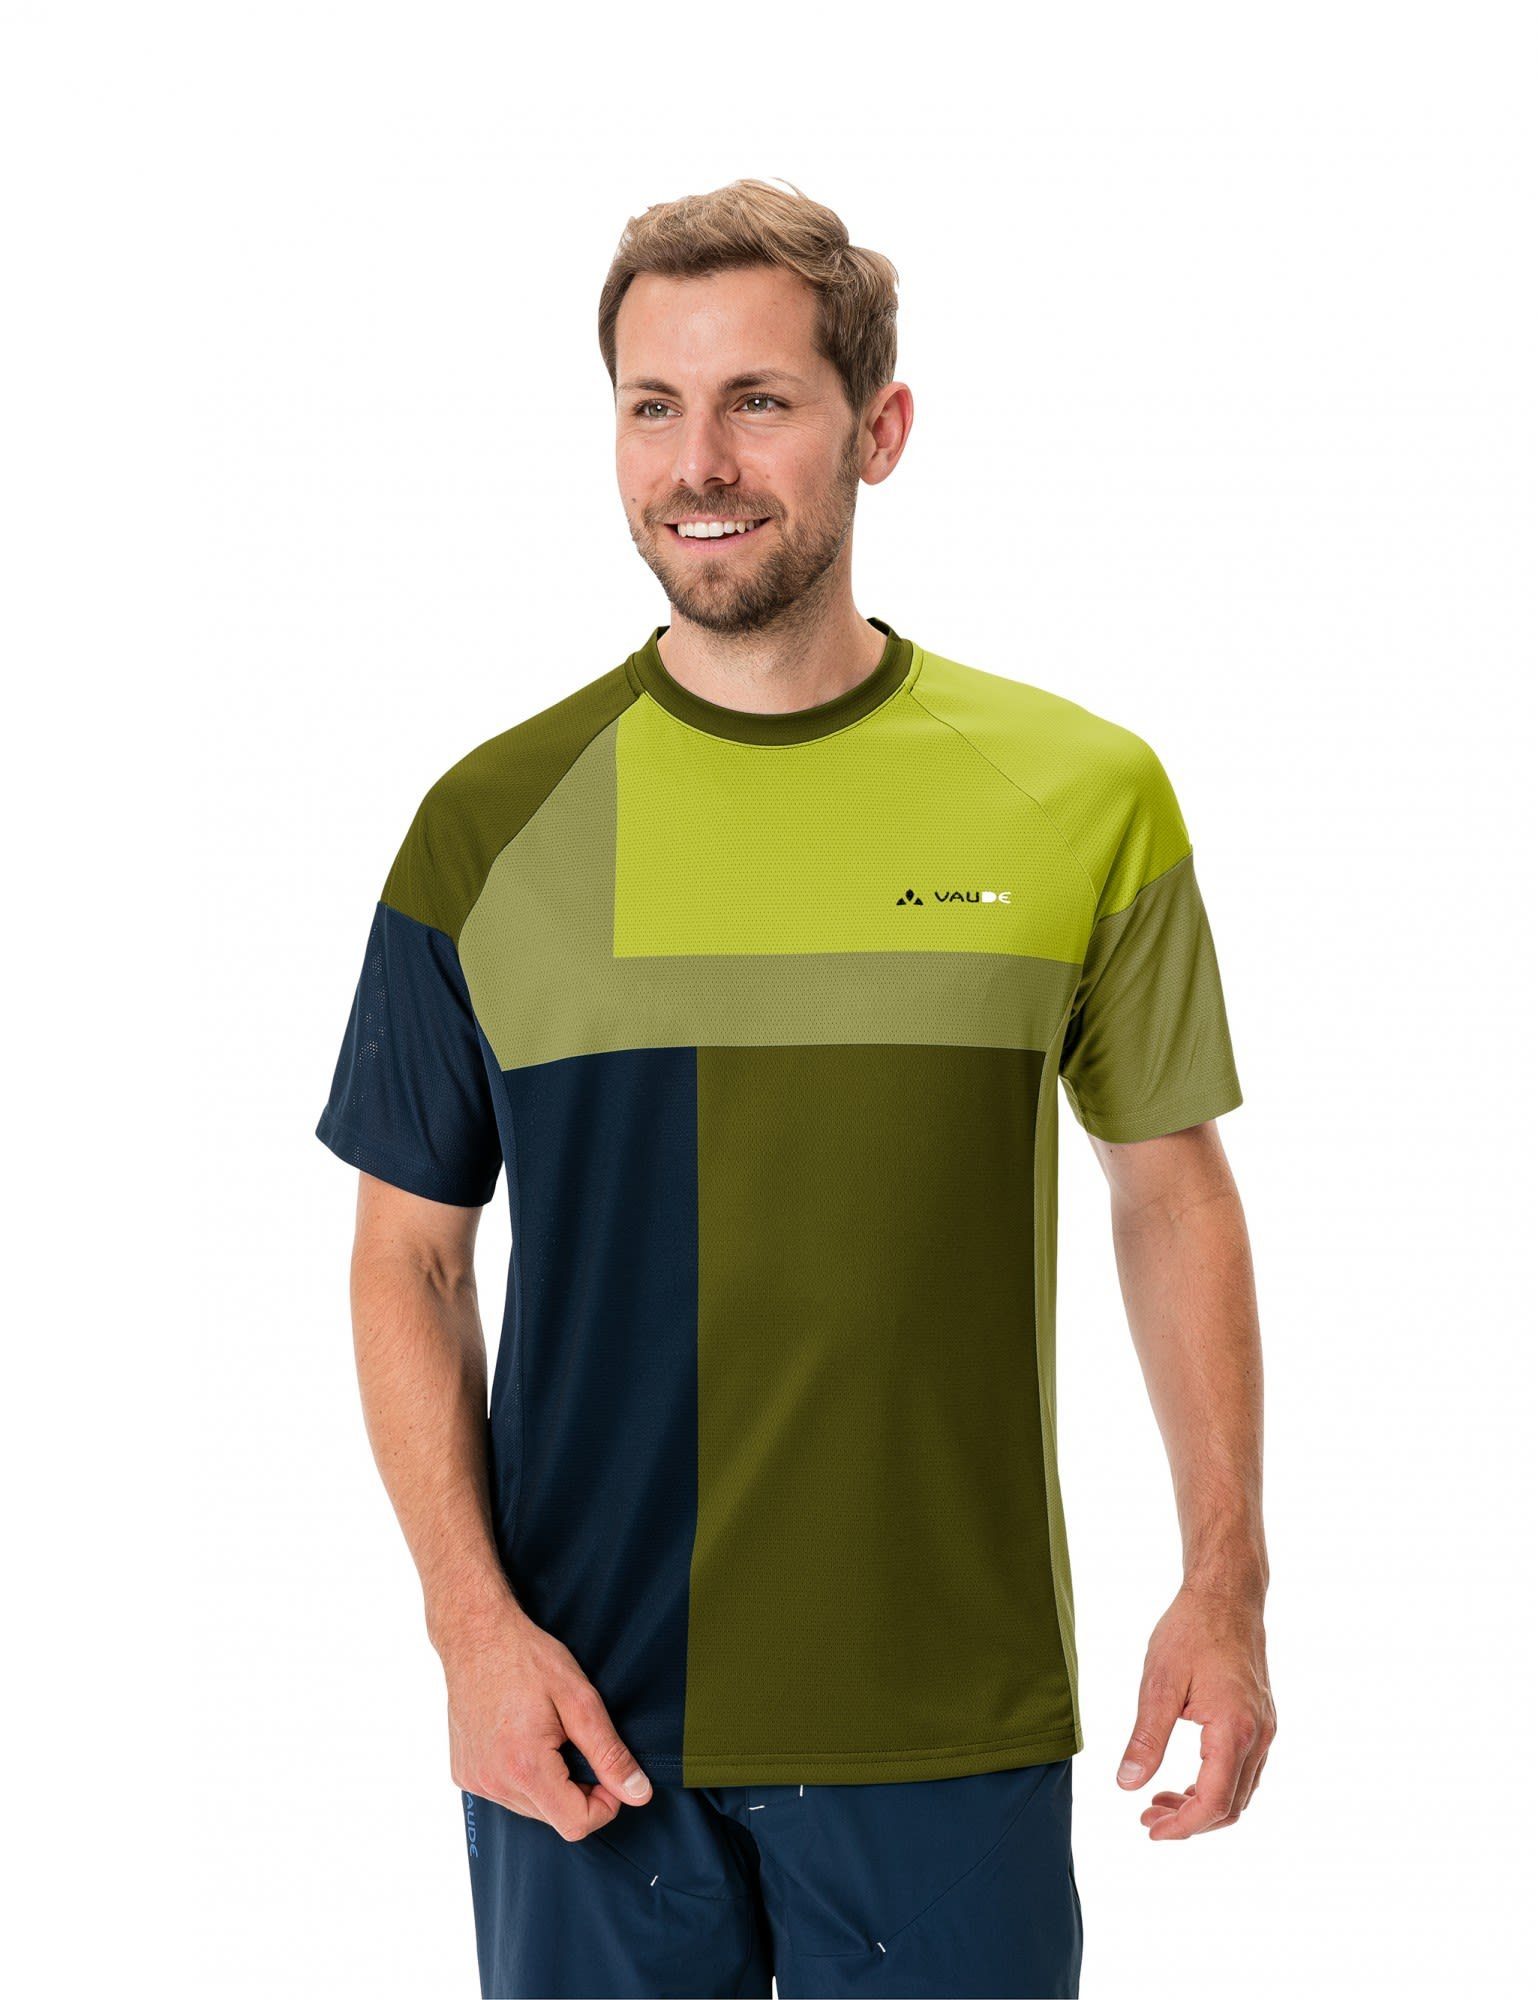 Herren Bright VAUDE Black Moab Vi - Green T-shirt T-Shirt Kurzarm-Shirt Mens Vaude